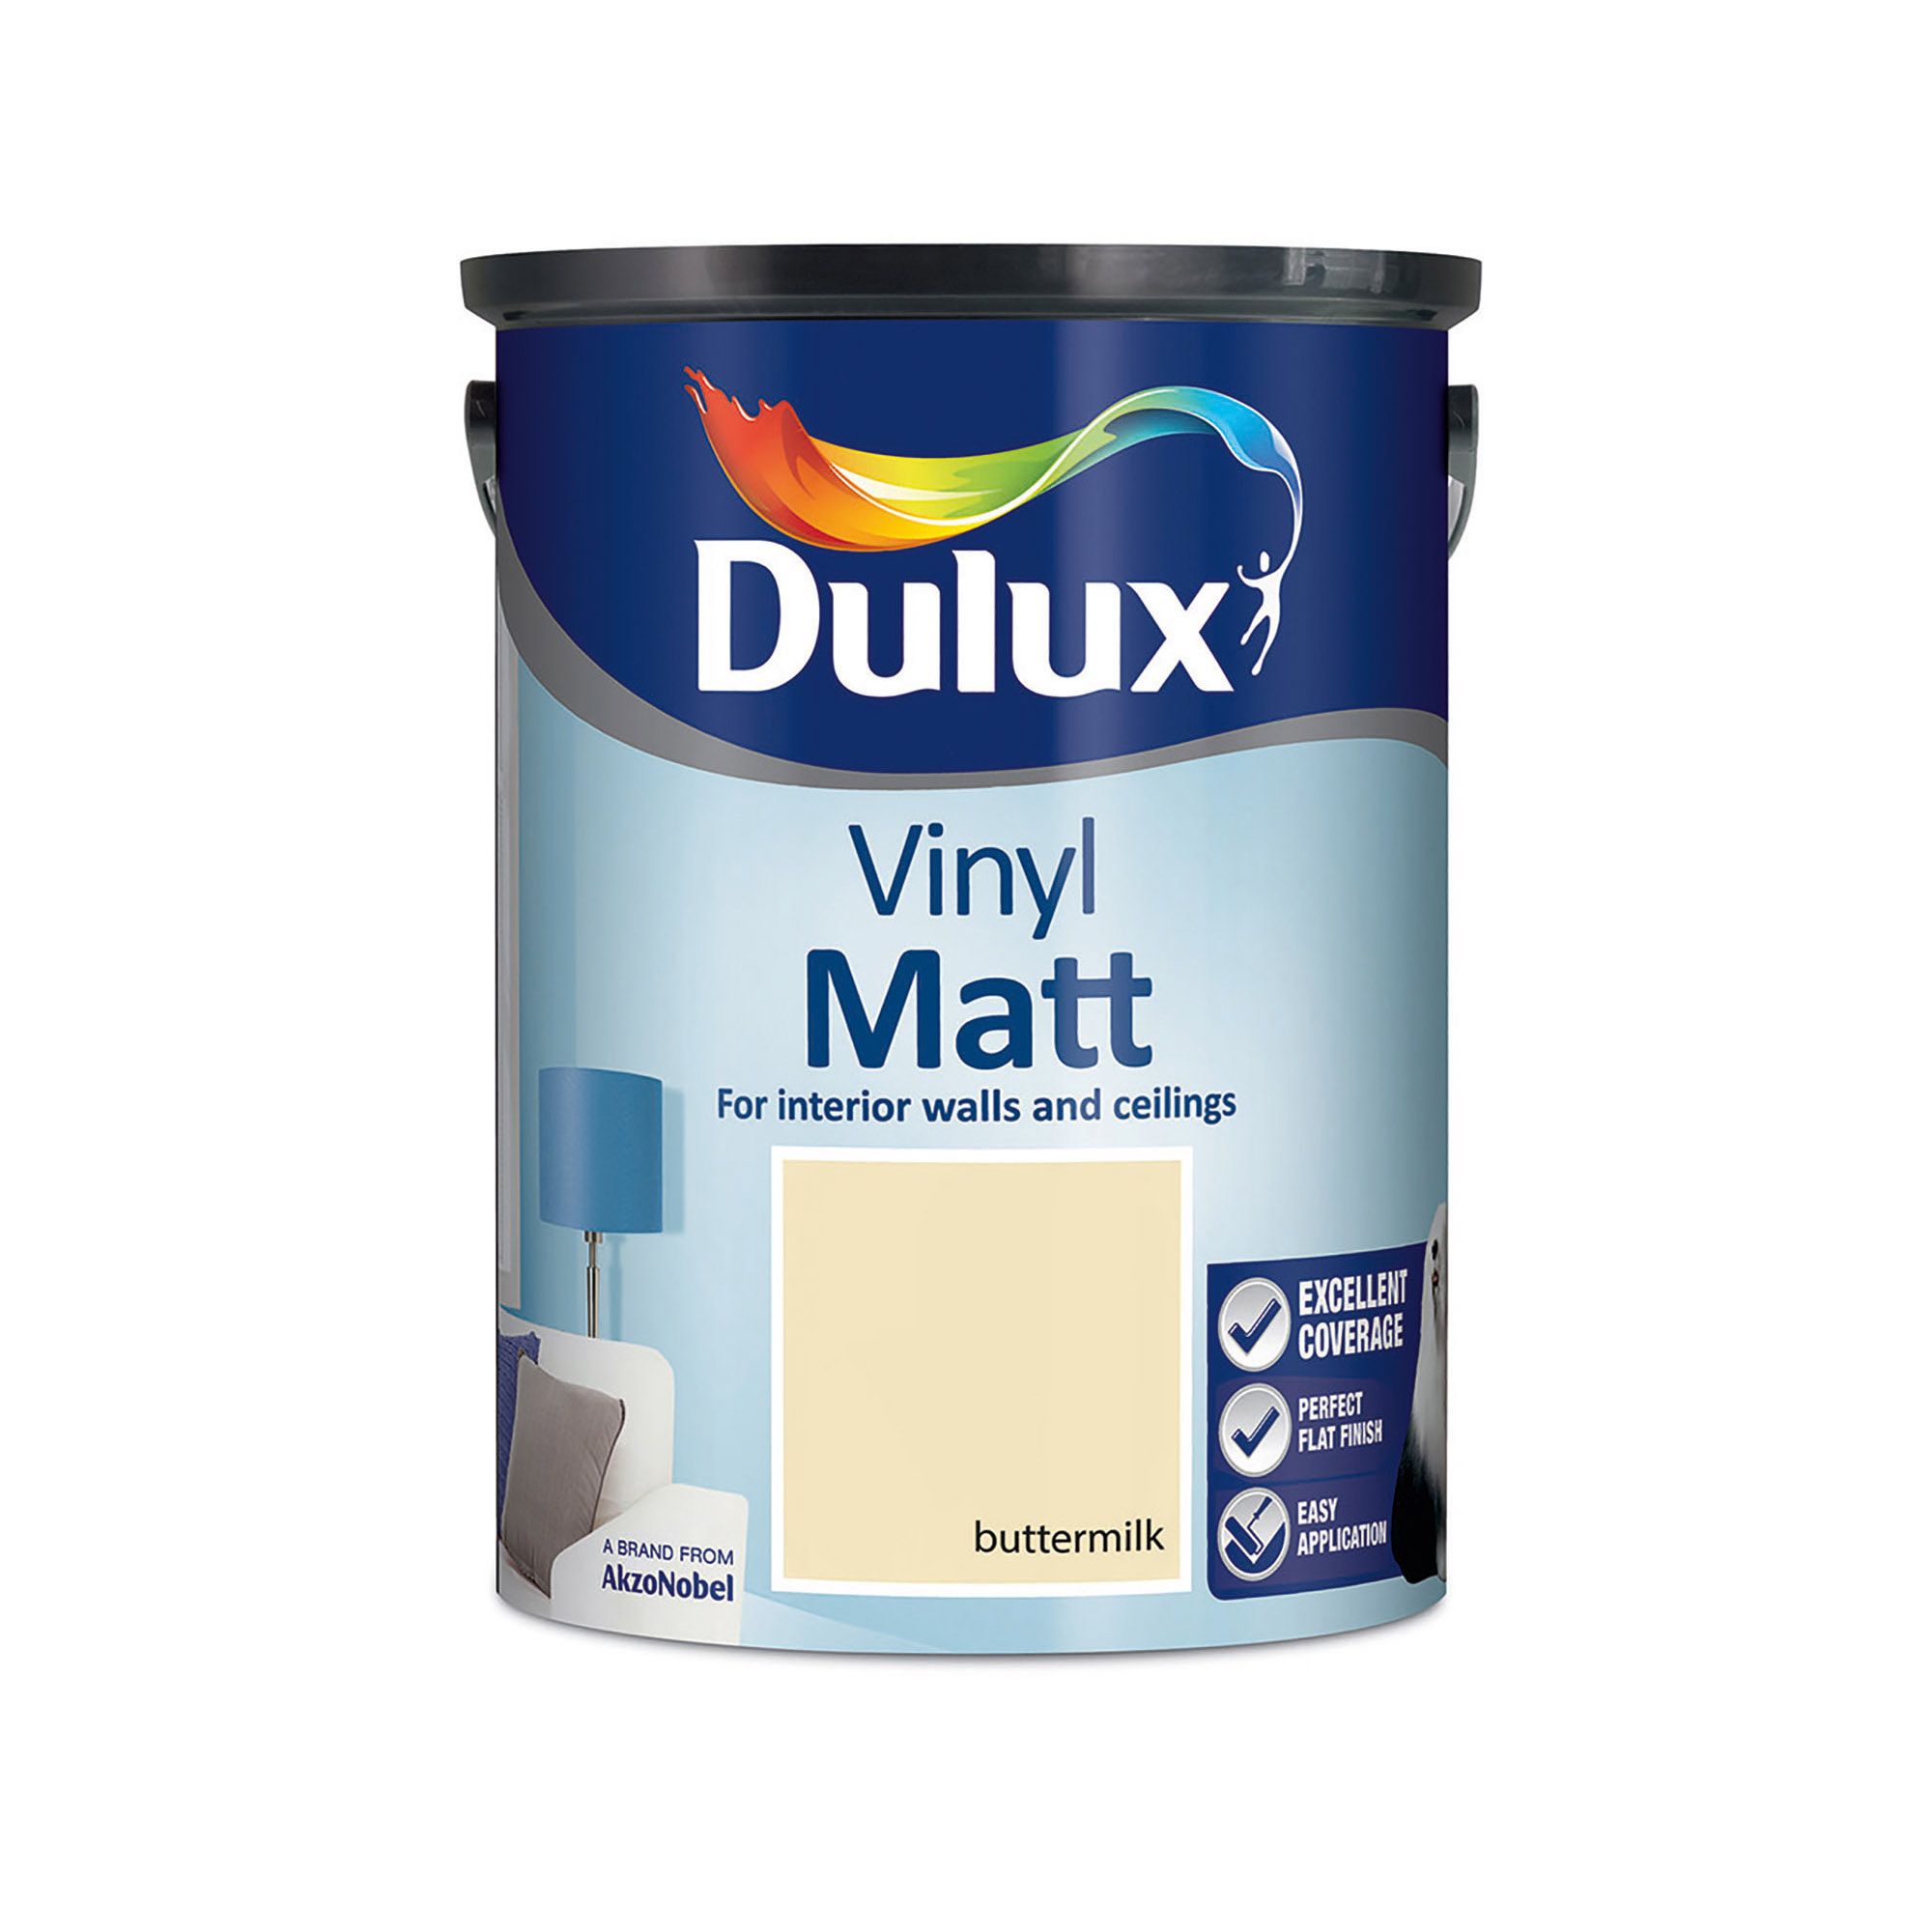 Dulux Easycare Buttermilk Vinyl matt Emulsion paint, 5L